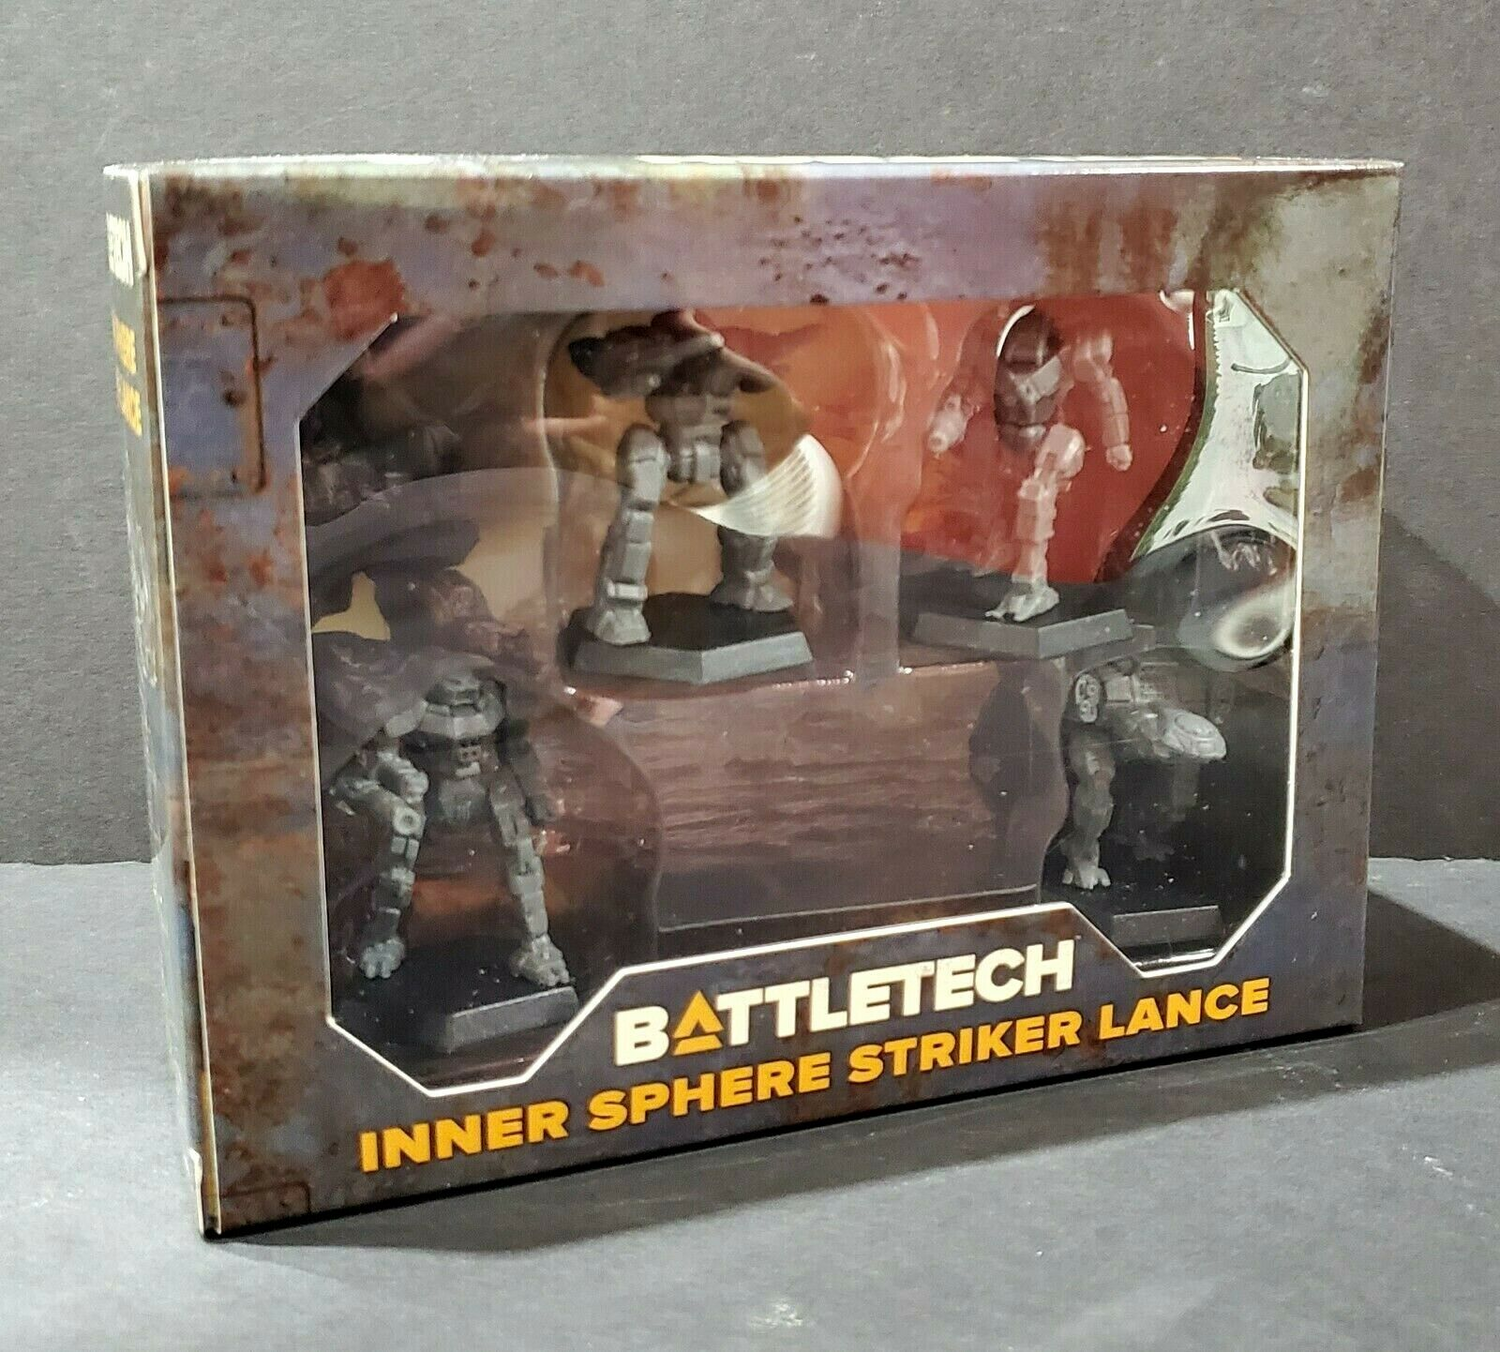 BattleTech: Inner Sphere Support Lance